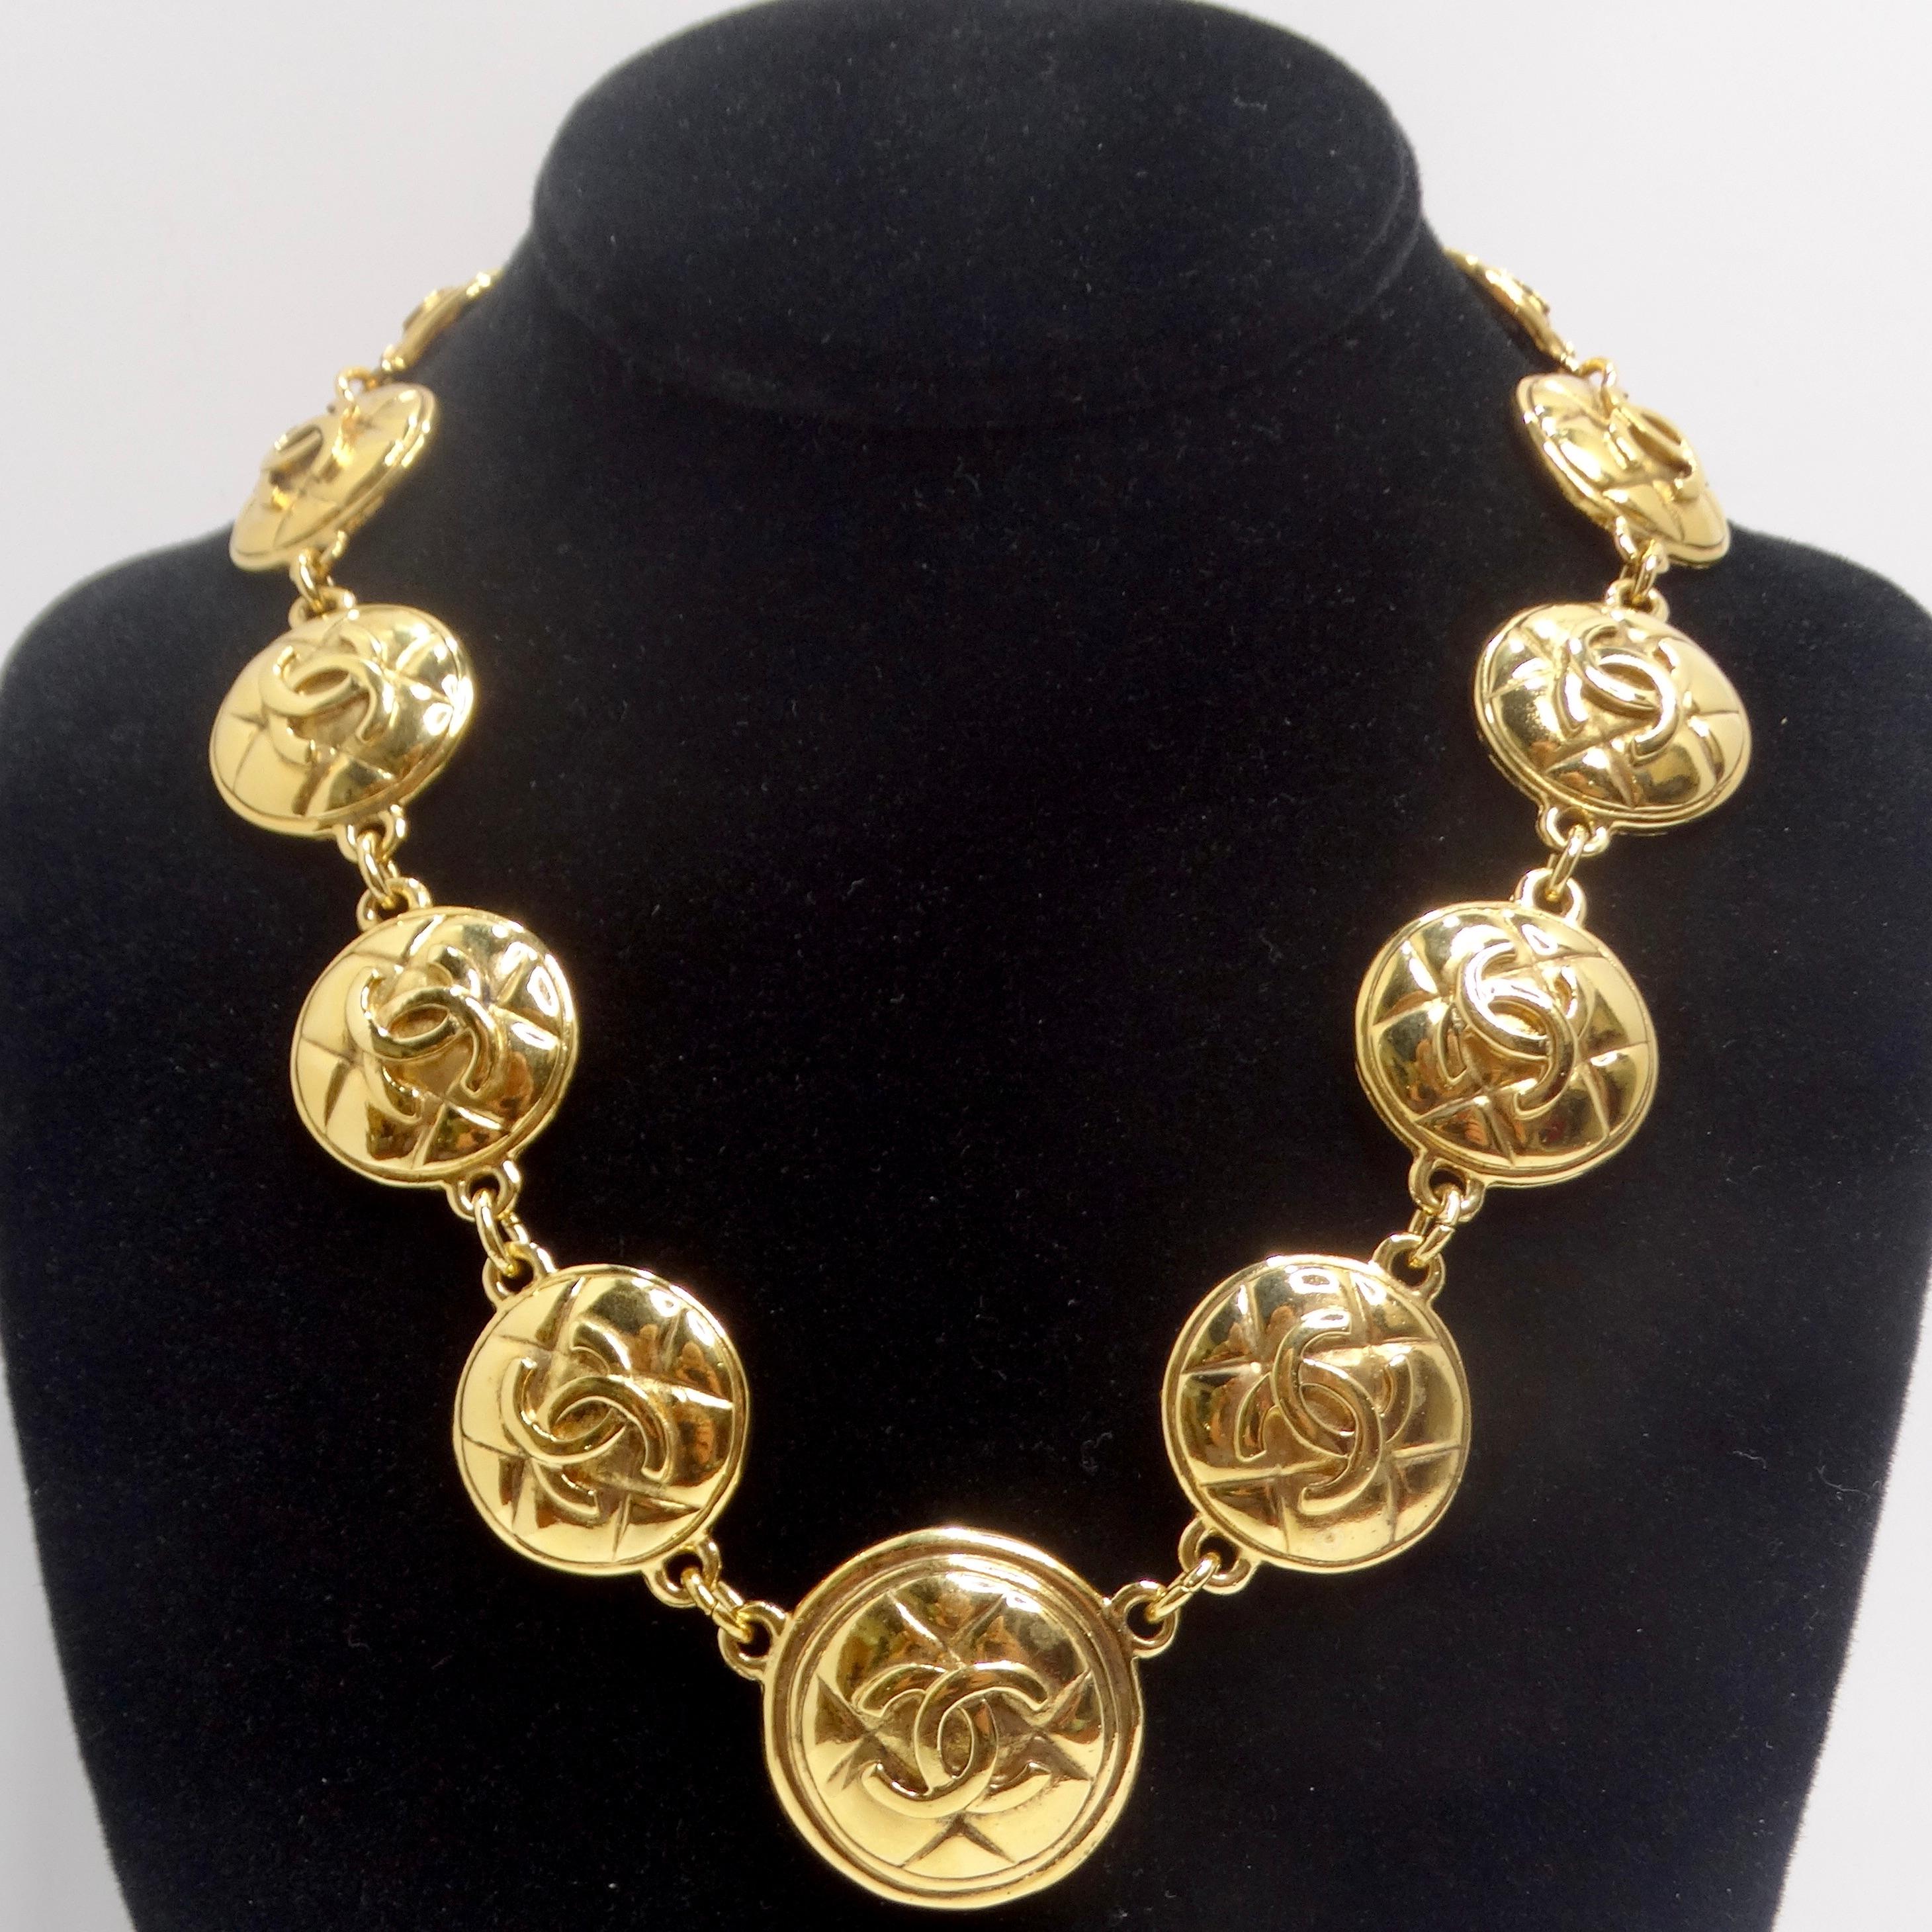 Wir präsentieren die Chanel 1980s Gold Tone Logo Quilted Medallion Necklace - eine klassische gelbvergoldete Gliederkette, die Vintage-Glamour verkörpert. Diese zeitlose und dennoch glamouröse Halskette besteht aus einer Reihe von runden,